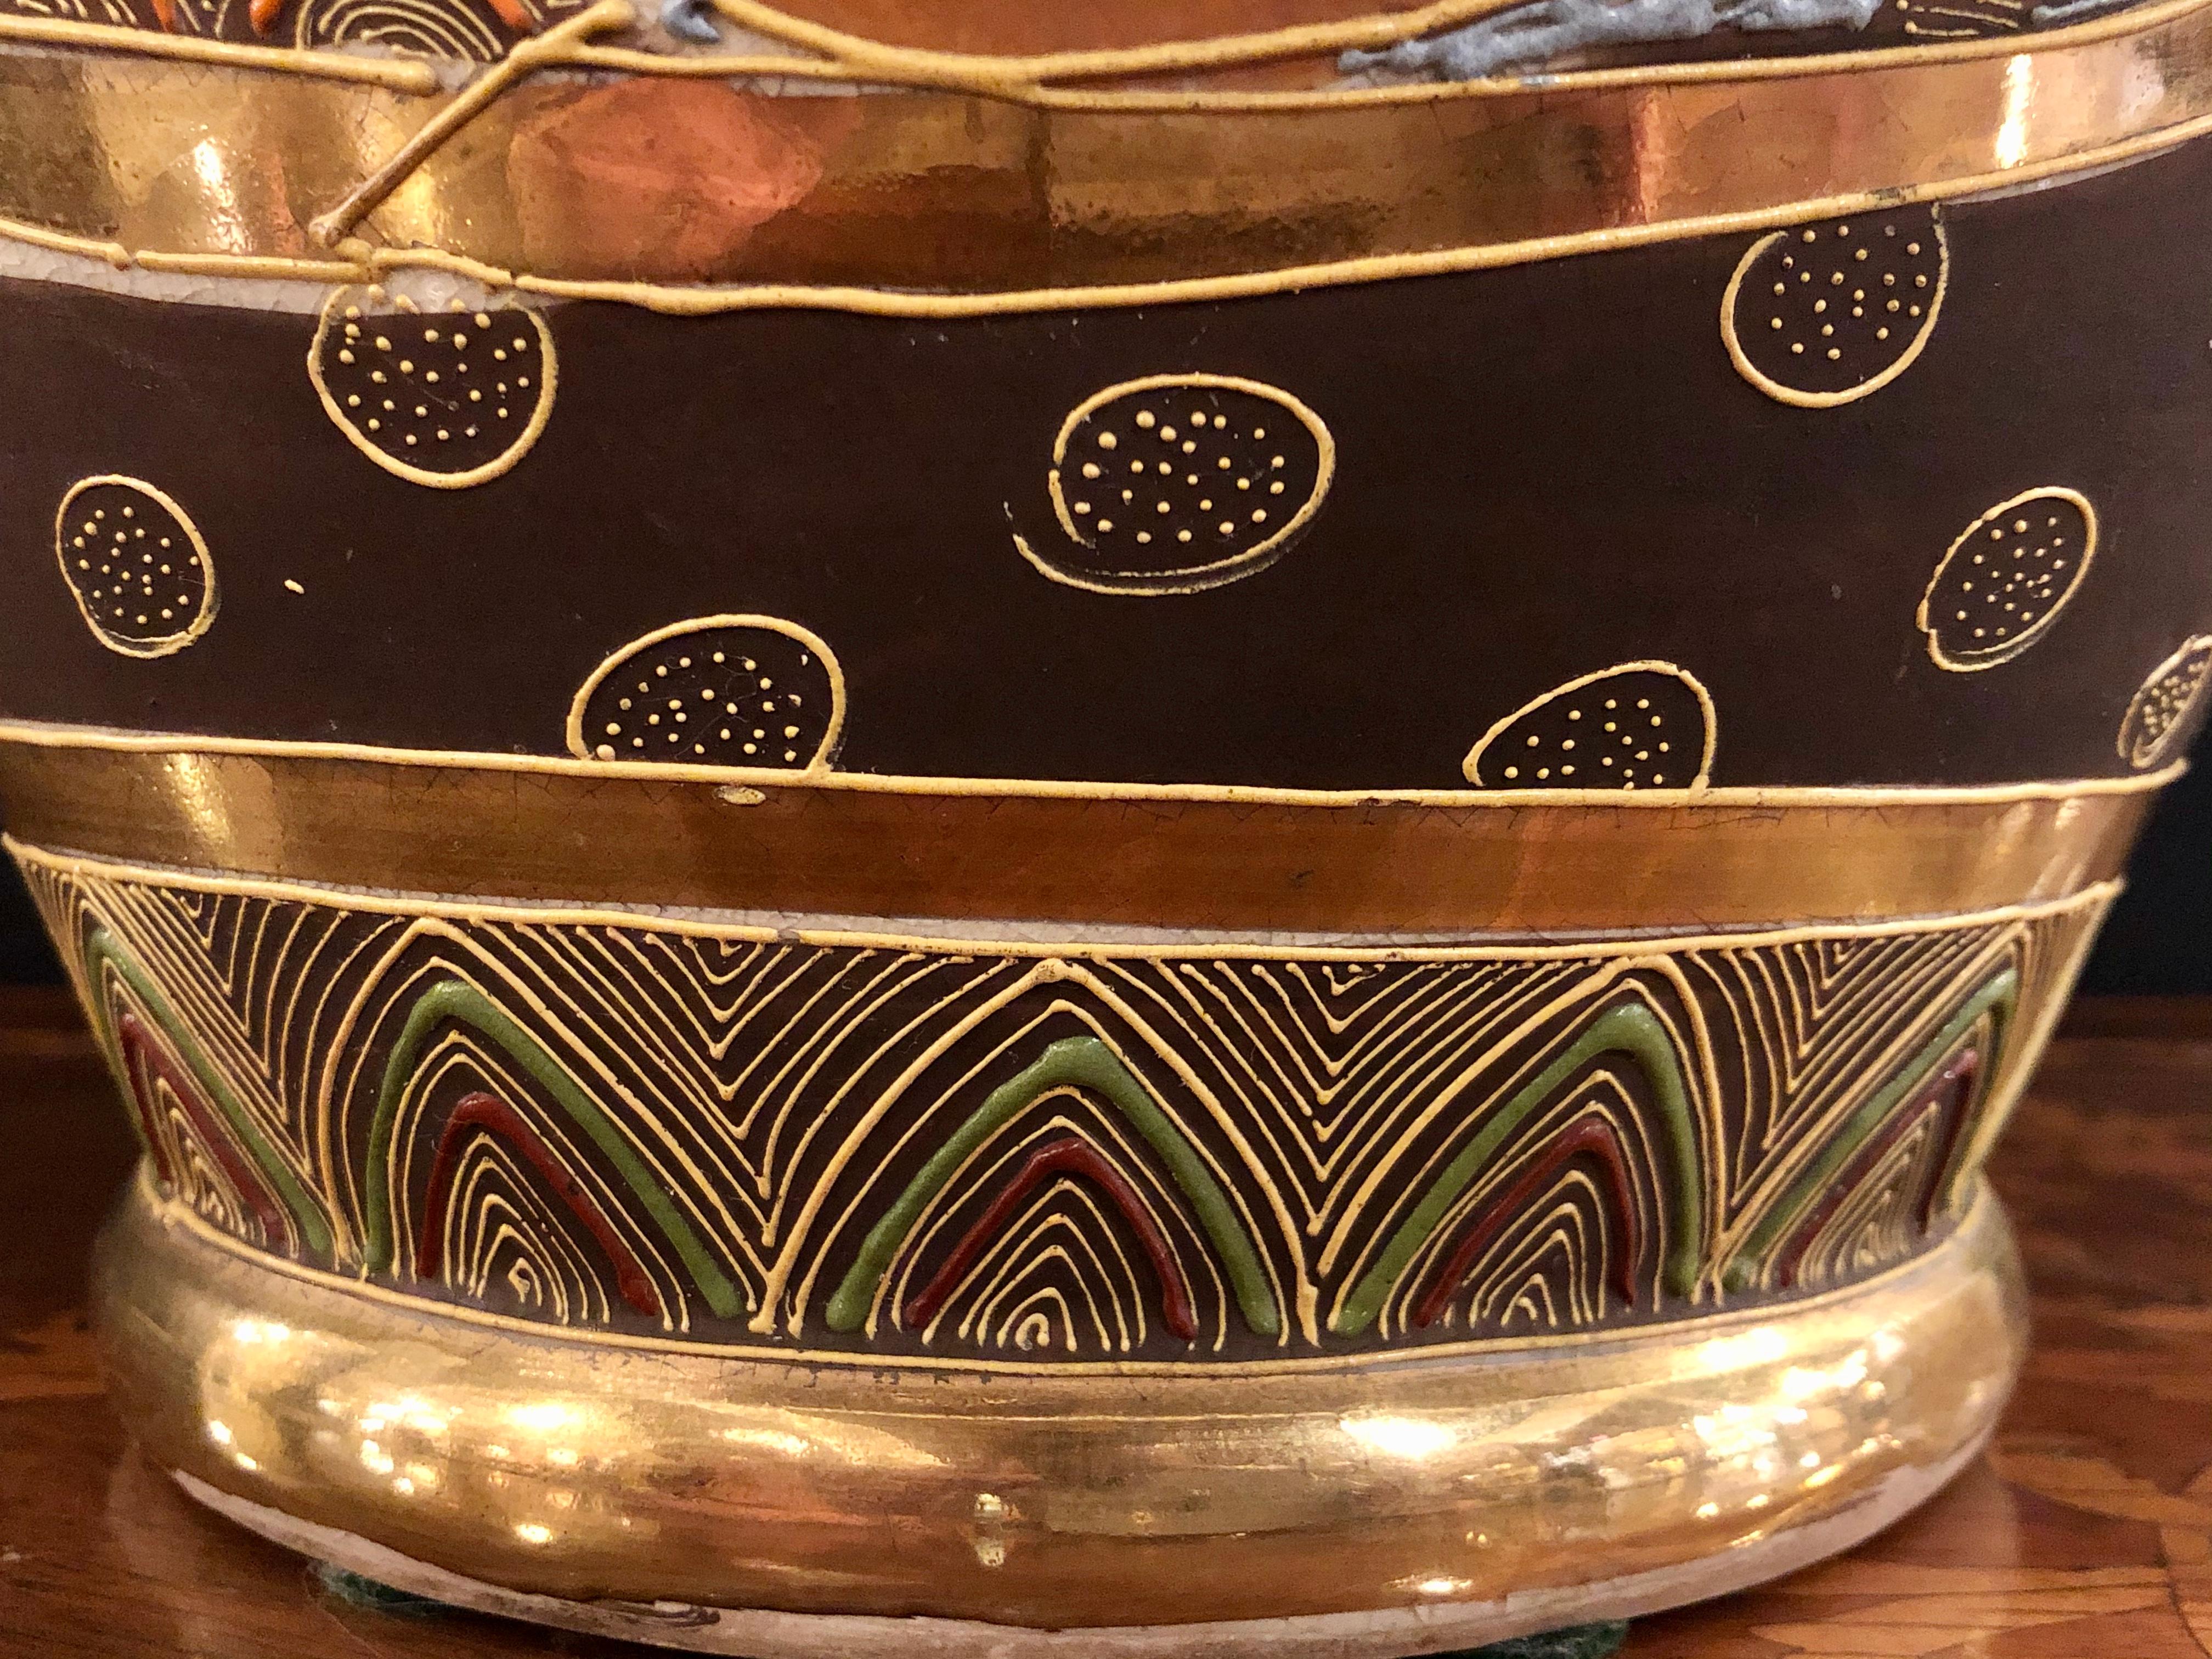 Japanese Satsuma Vase Large and Impressive Gilt Gold Dragon Decorated, Signed 2